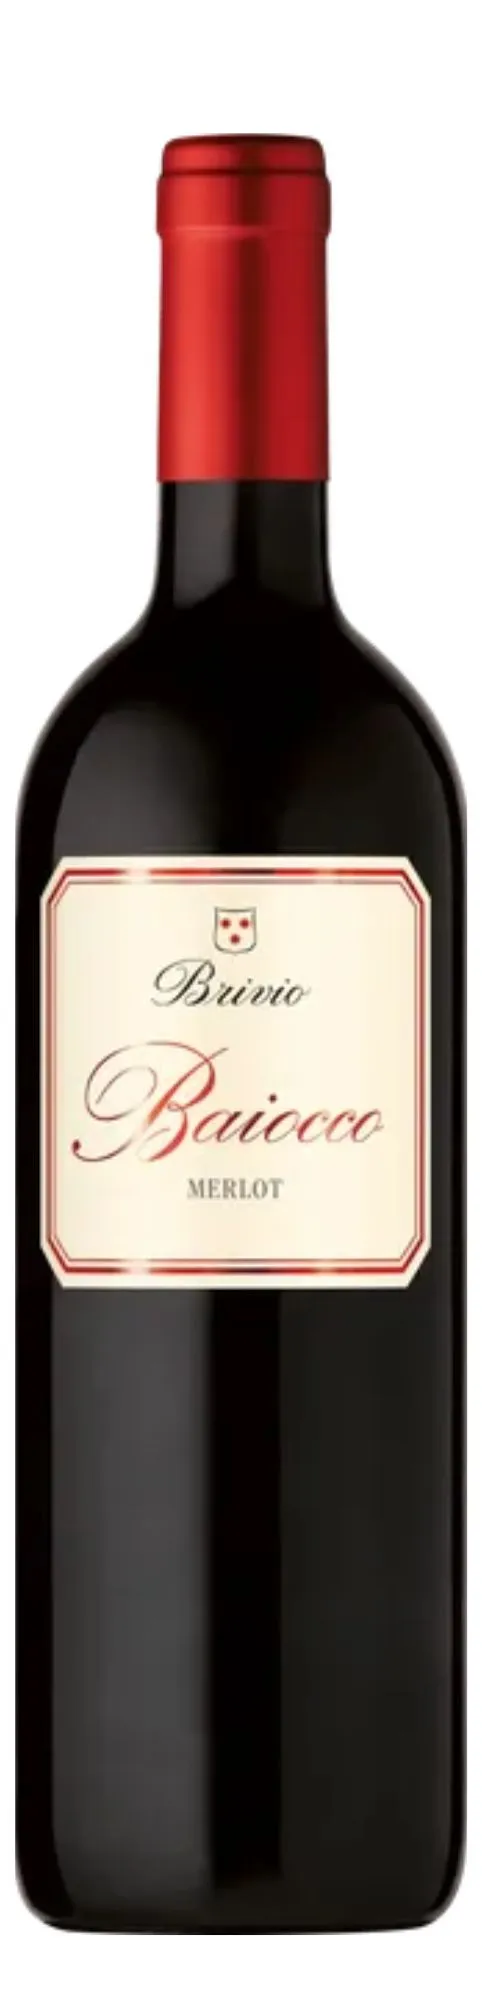 Merlot del Ticino Riserva DOC Baiocco